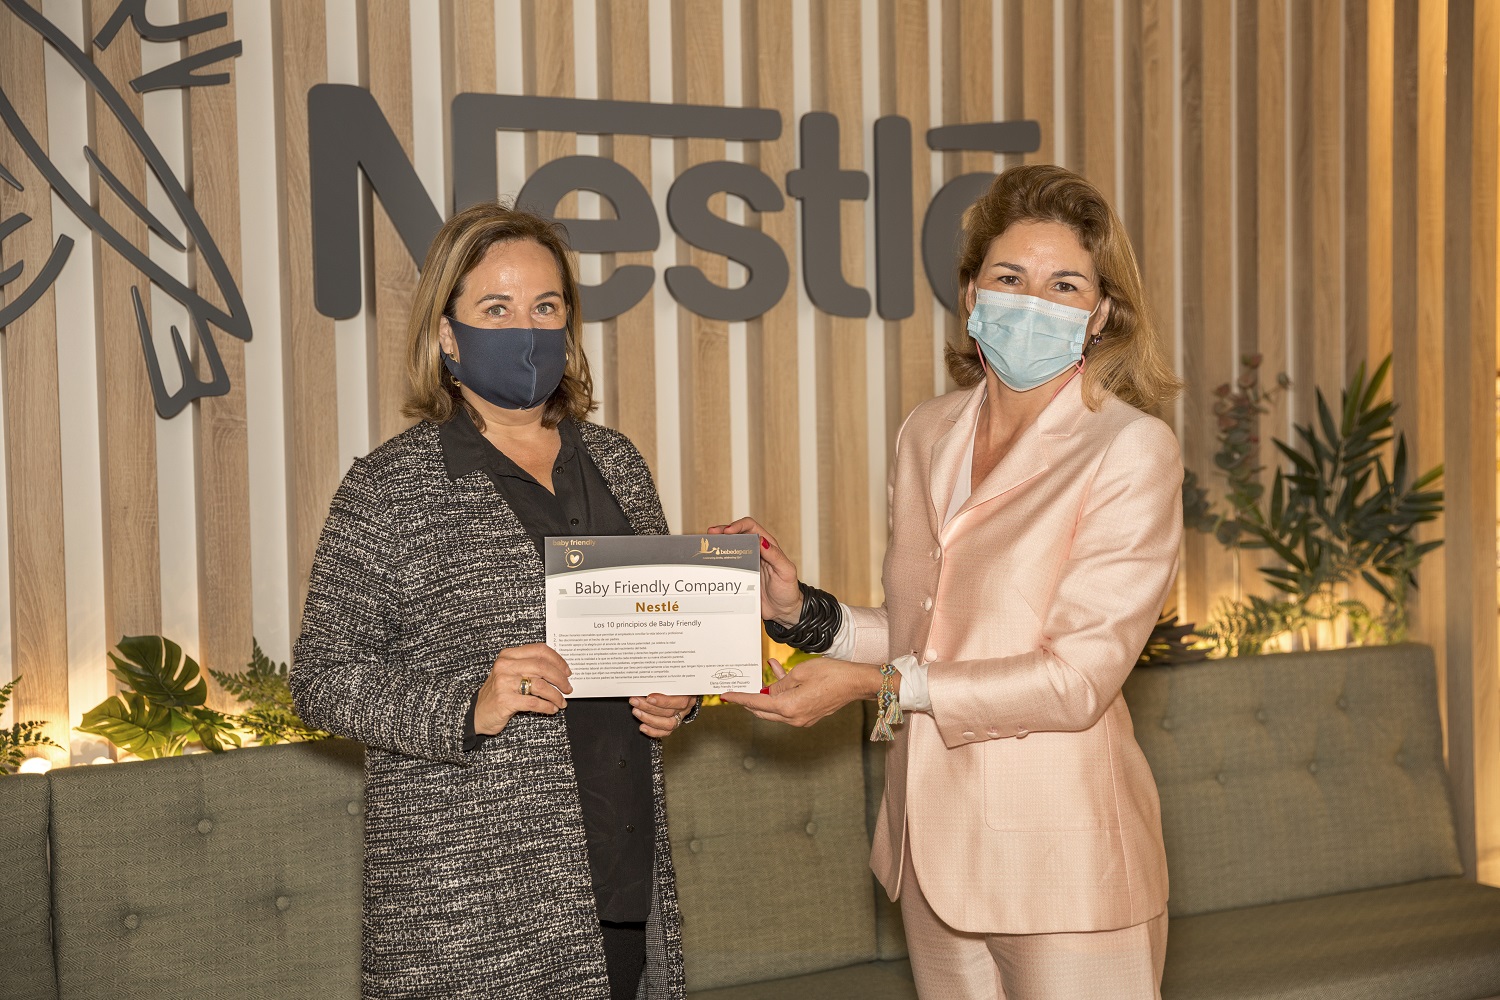 Nestlé impulsa para sus empleados un plan de apoyo a la crianza